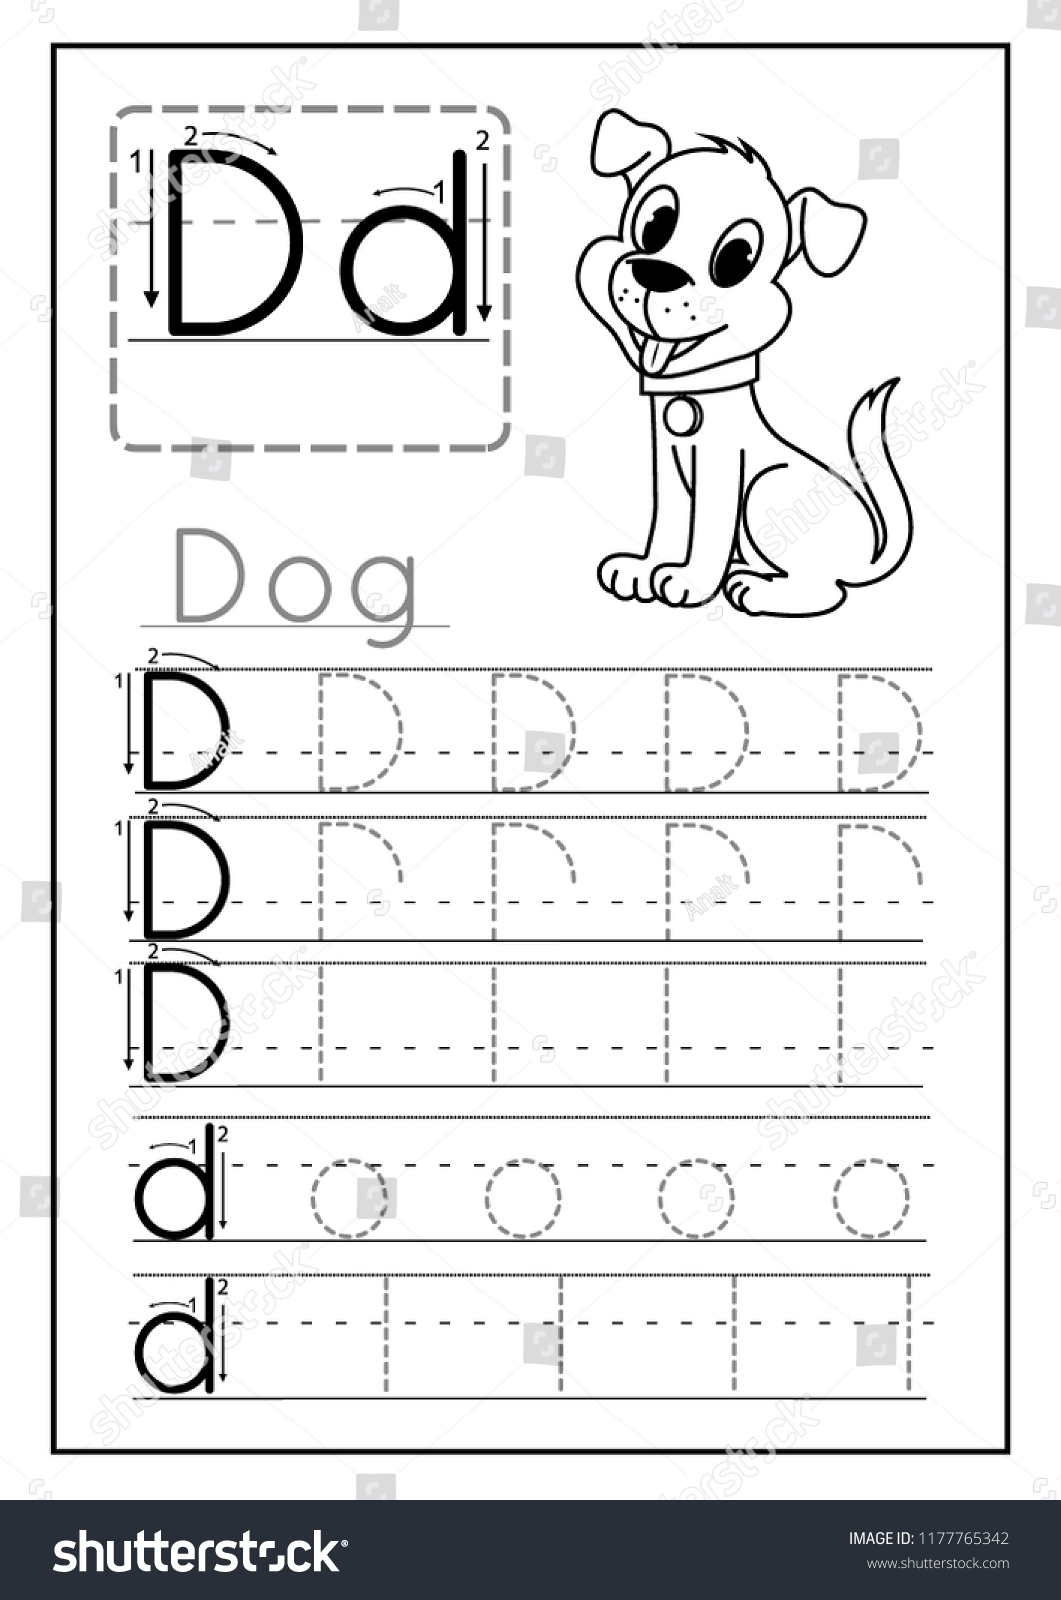 Writing Practice Letter D Printable Worksheet Stock Vector In Letter D Worksheet For Preschool